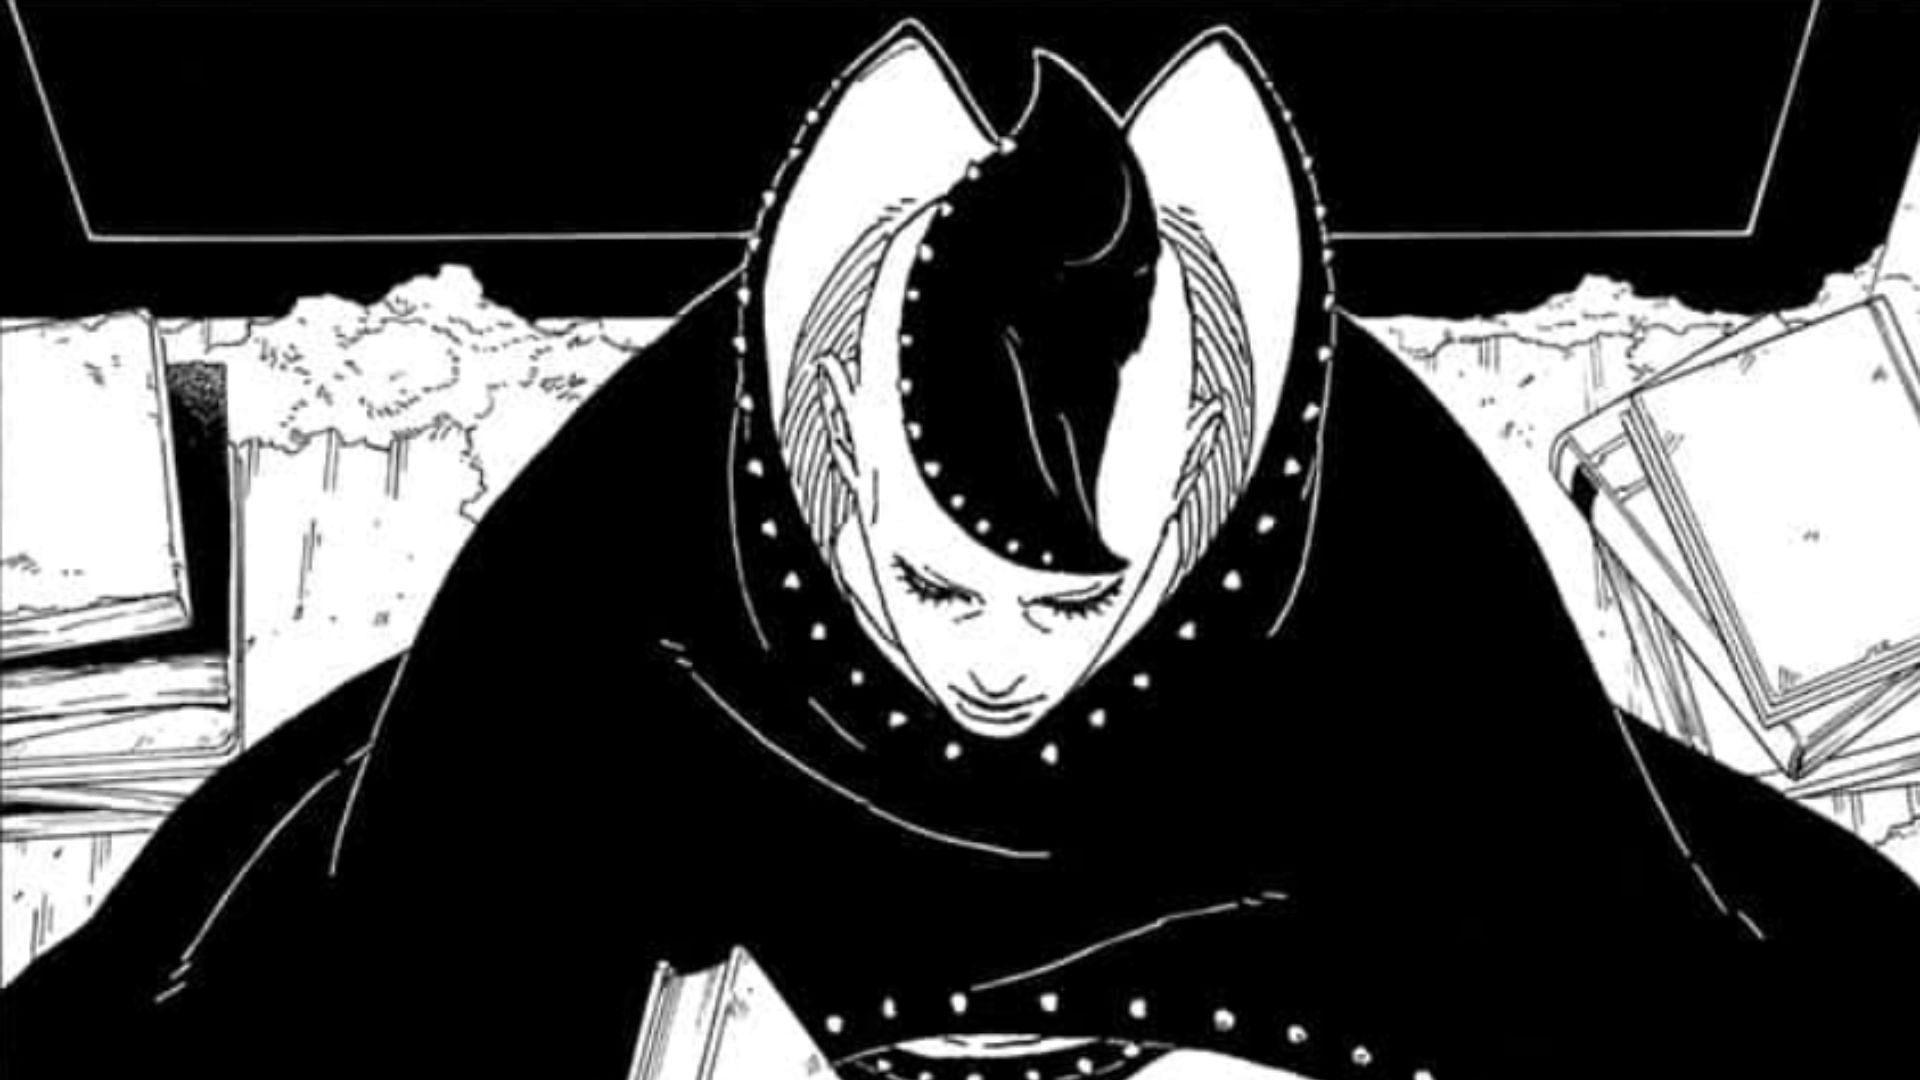 Jura as seen in the manga (Image via Shueisha/Masashi Kishimoto and Mikio Ikemoto)